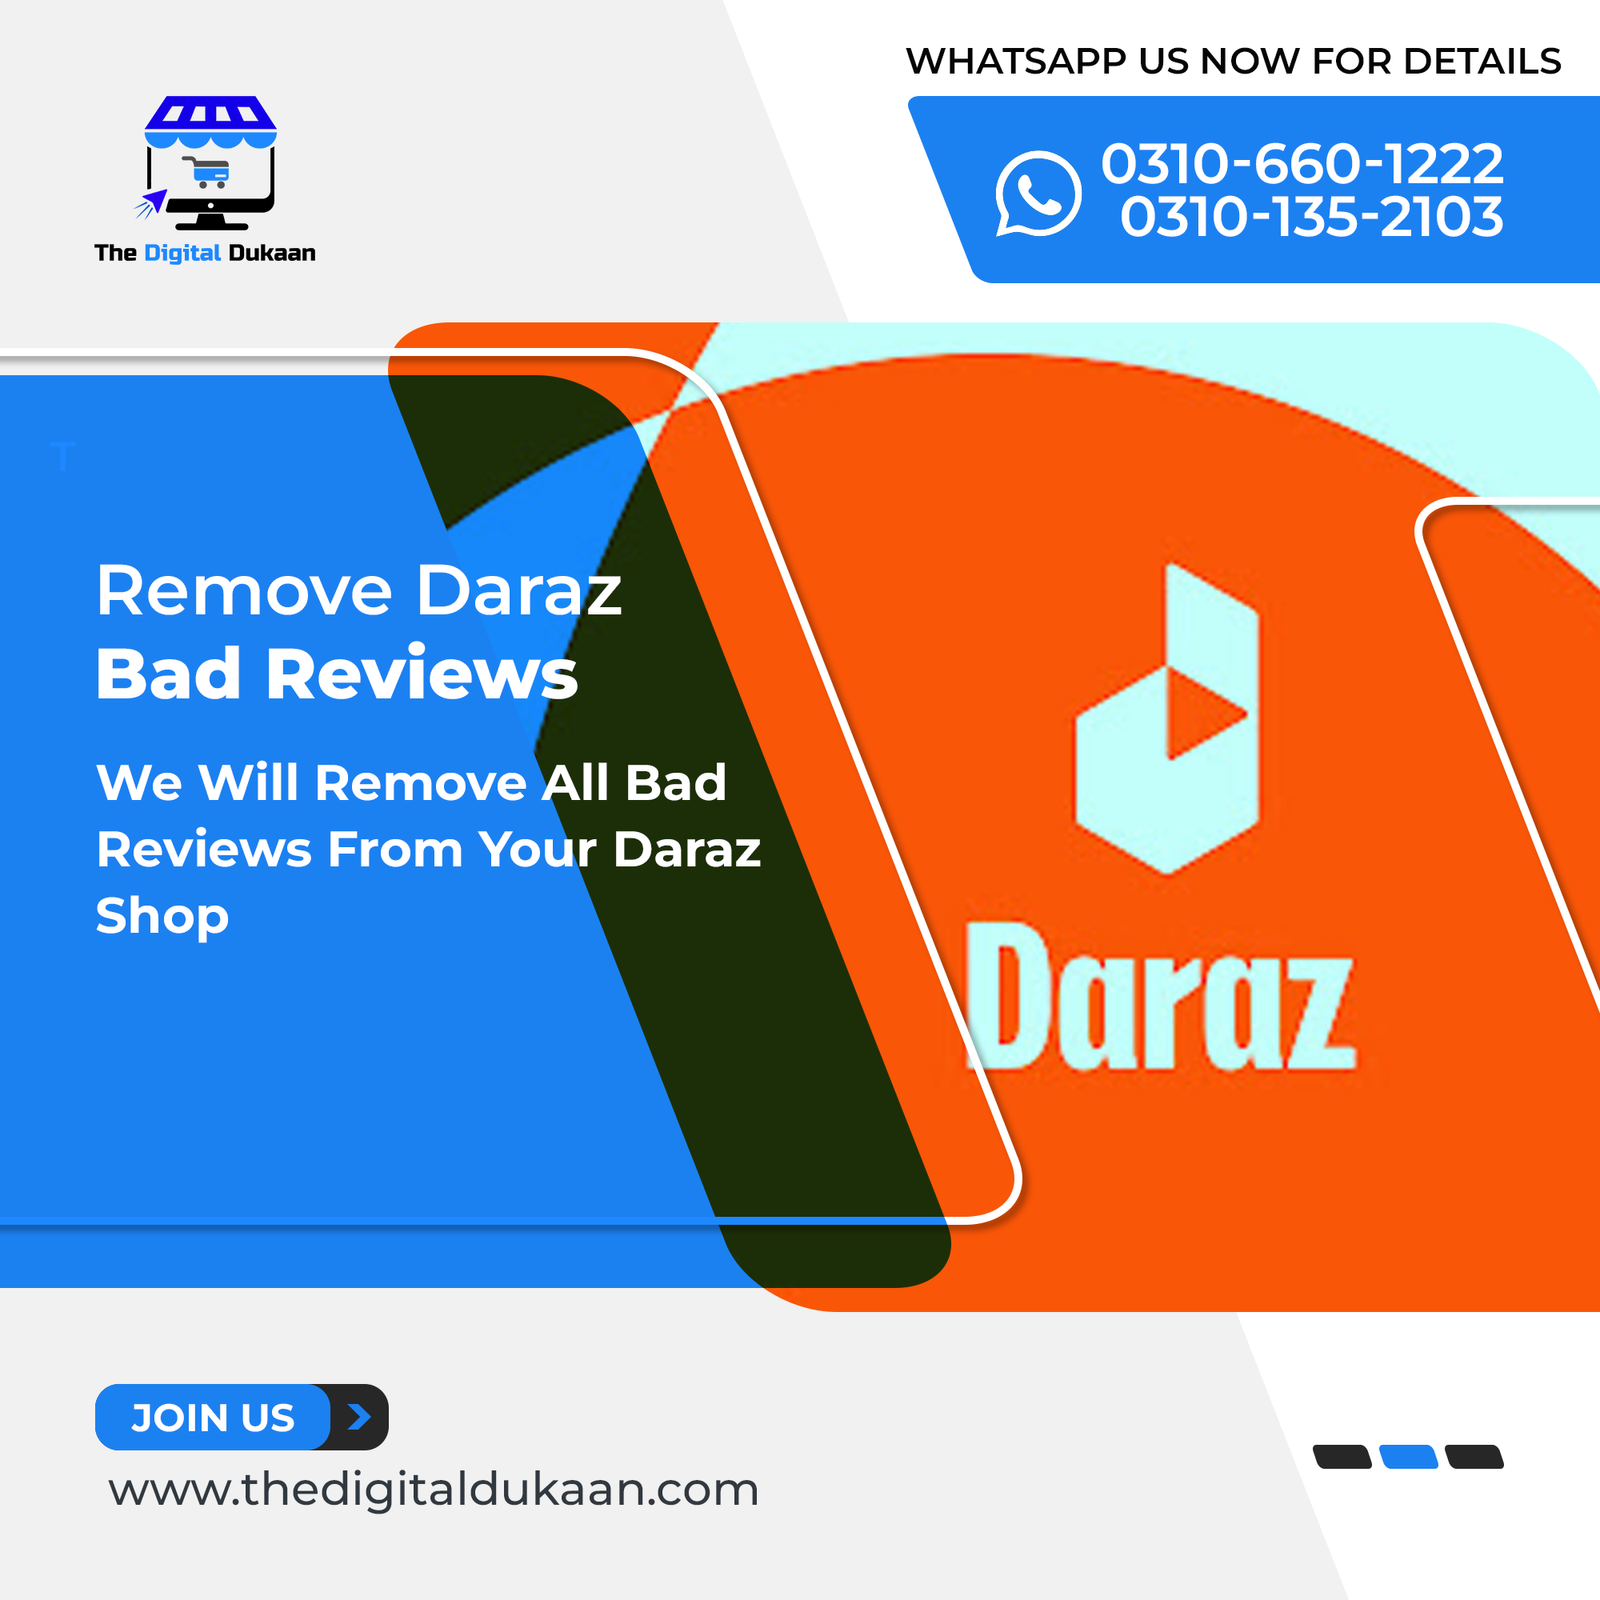 Daraz Reviews Removal